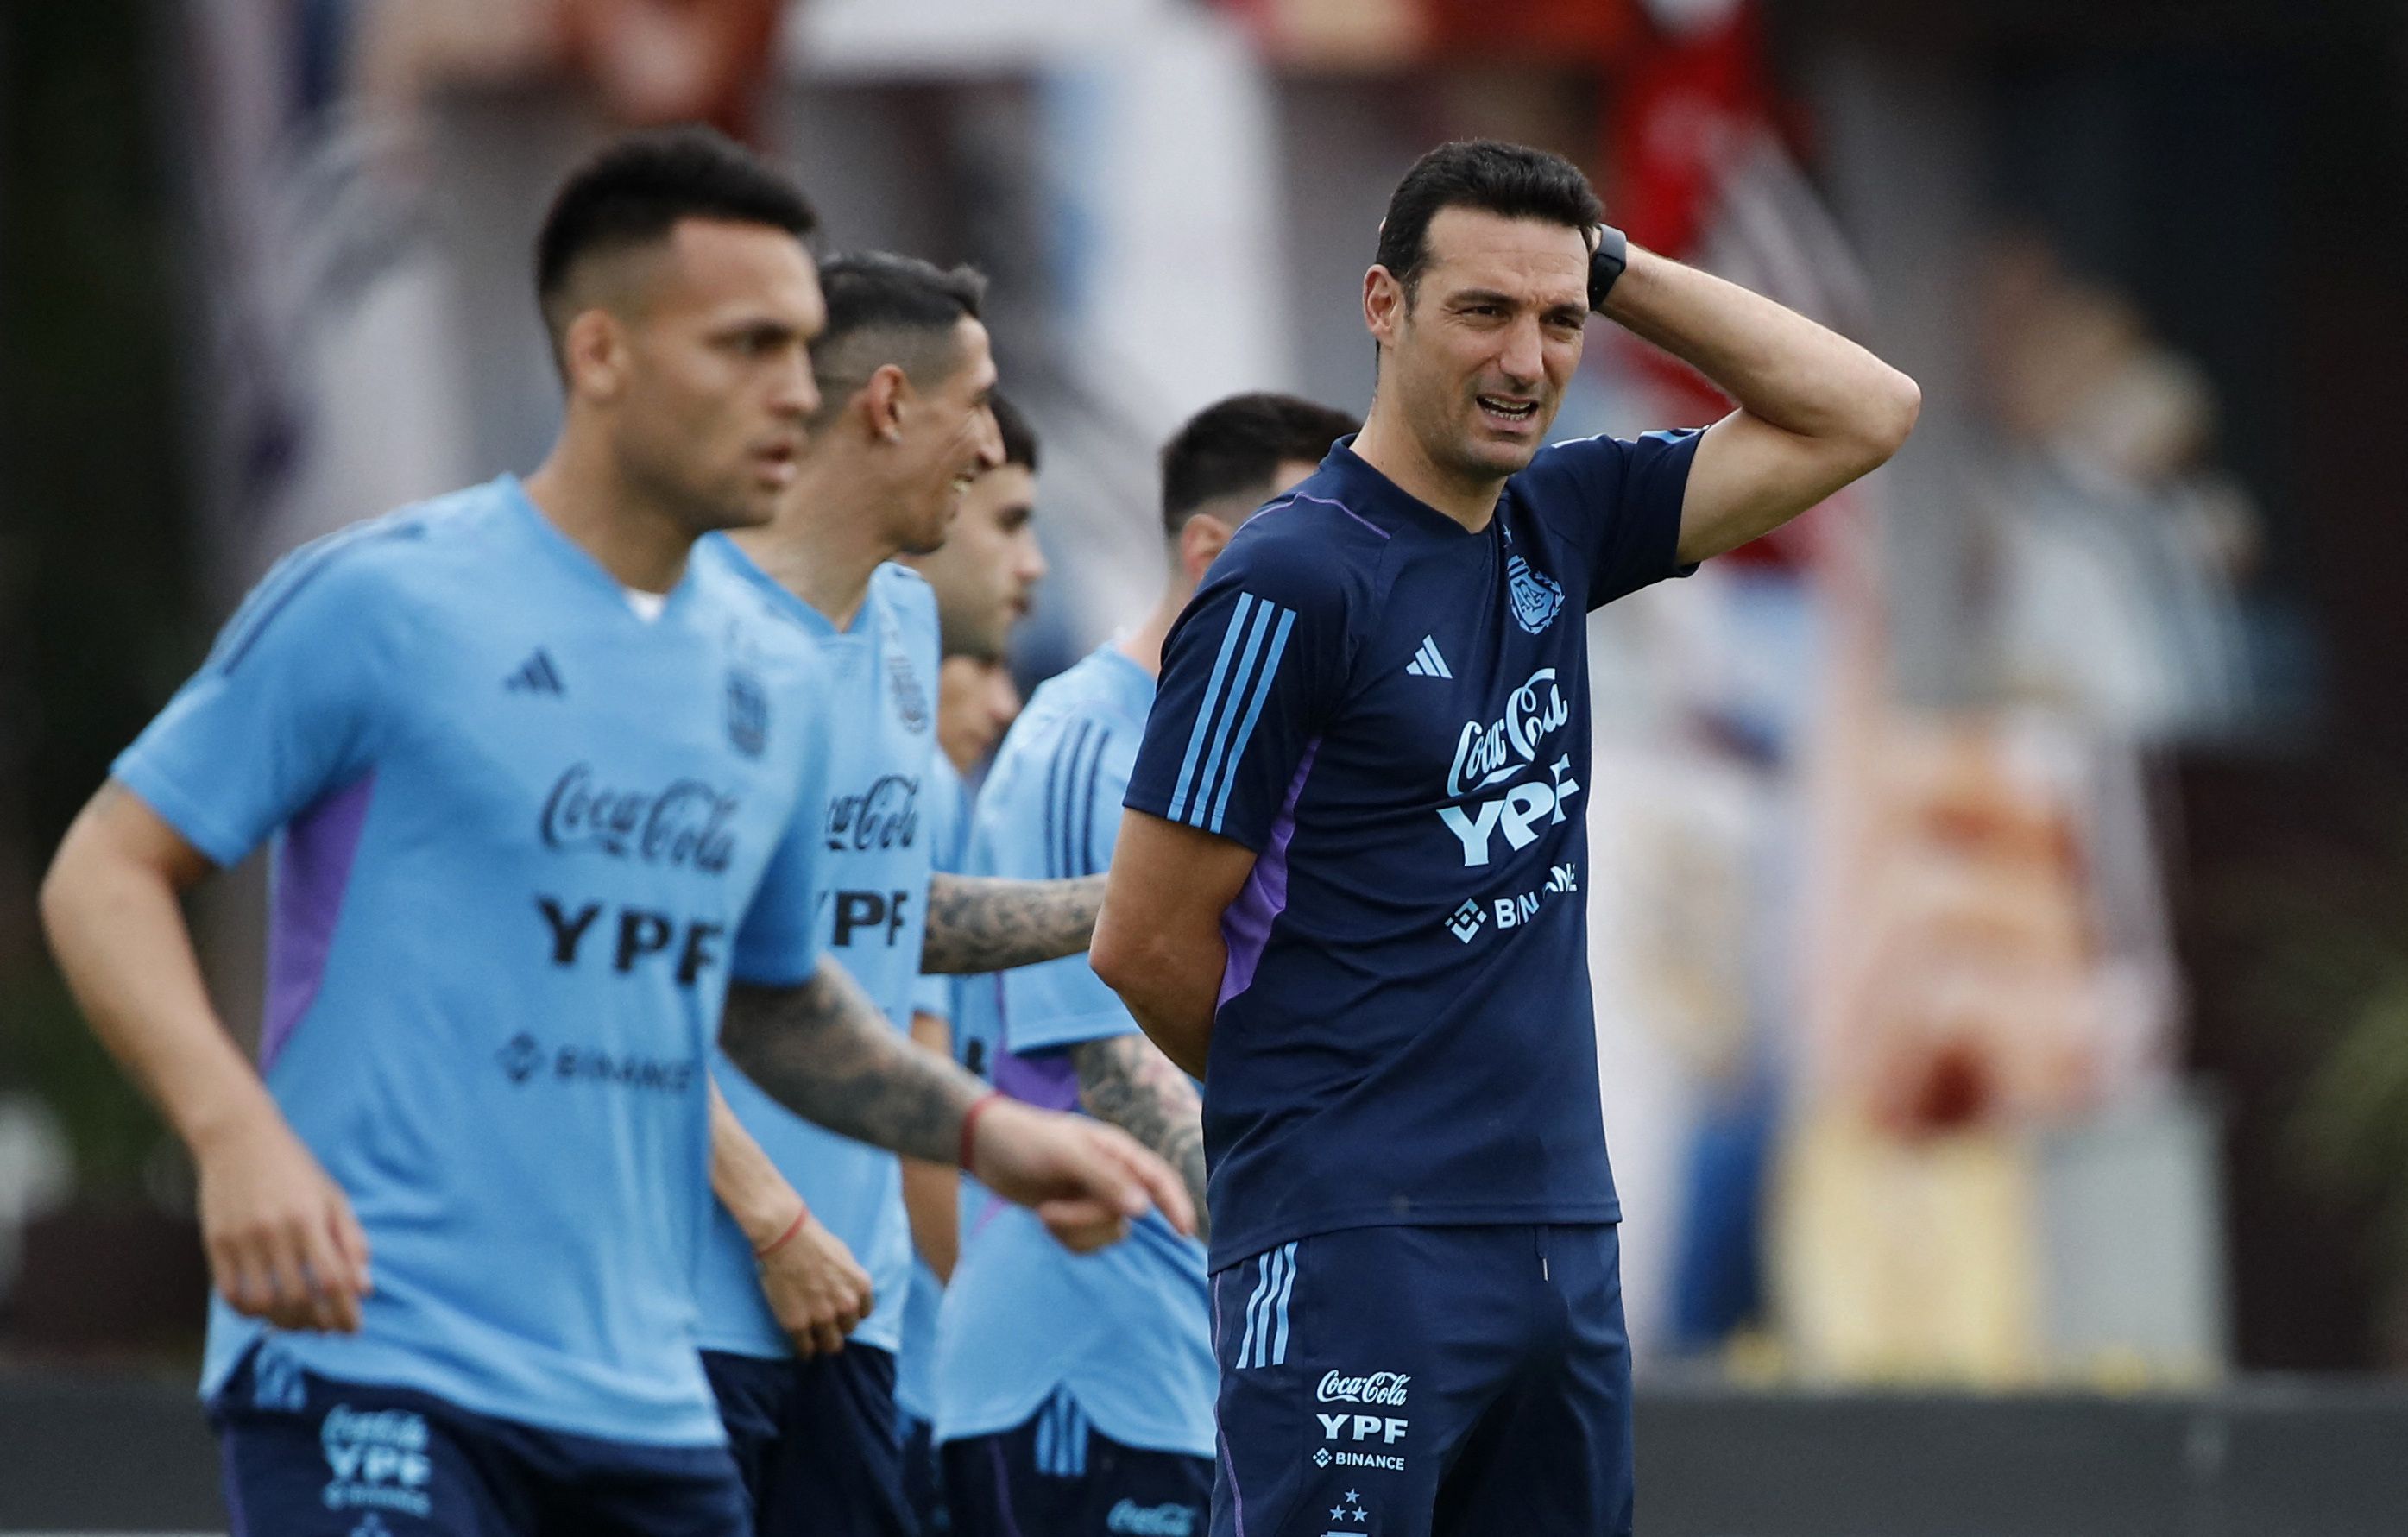 La sorpresa en el segundo entrenamiento de la selección argentina: Lionel Scaloni sumó un inesperado refuerzo - Infobae